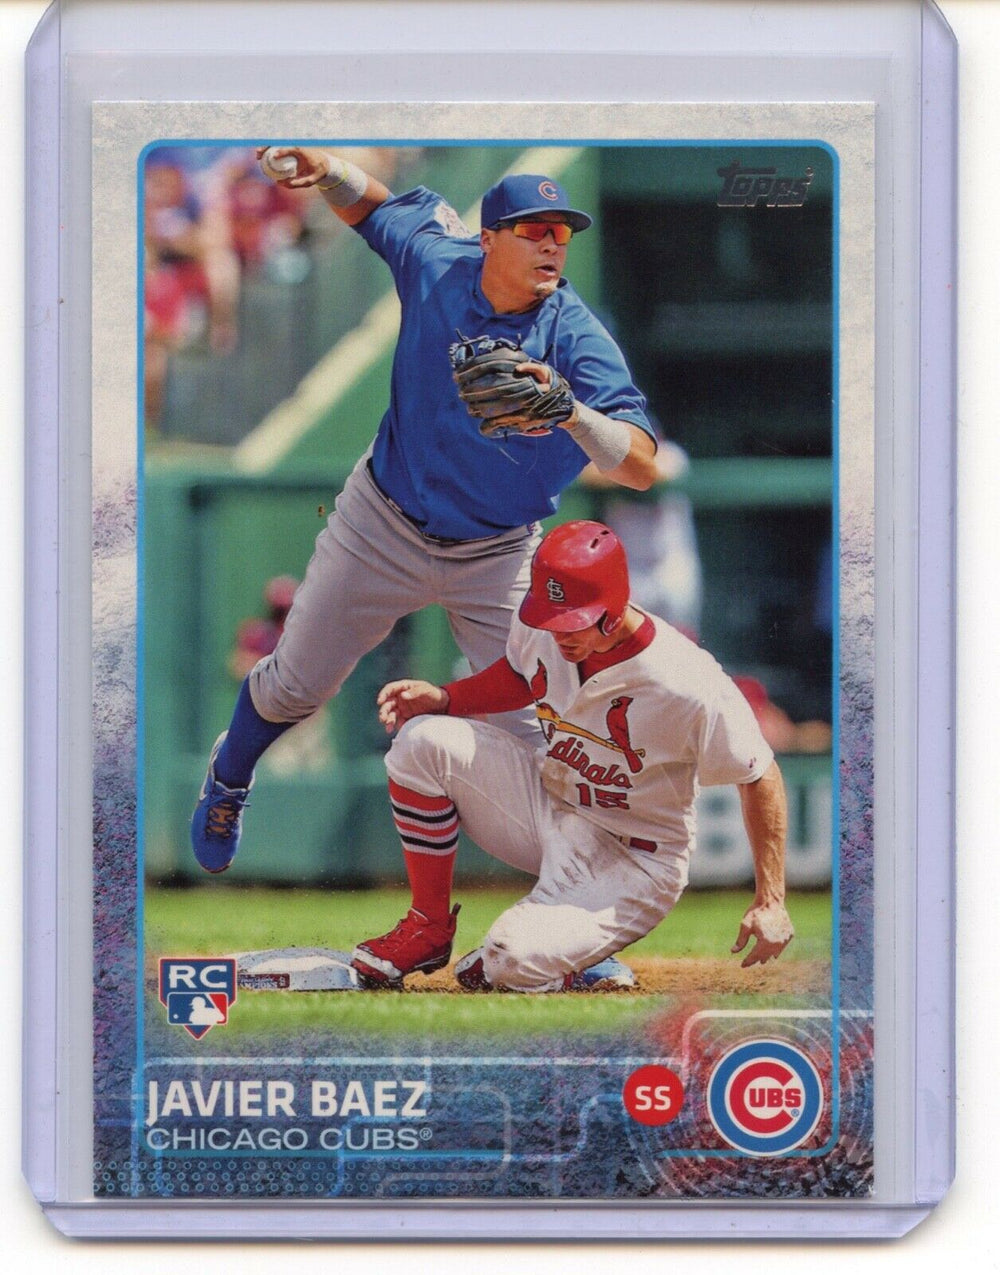 Javier Baez 2015 Topps Series Mint ROOKIE Card #192